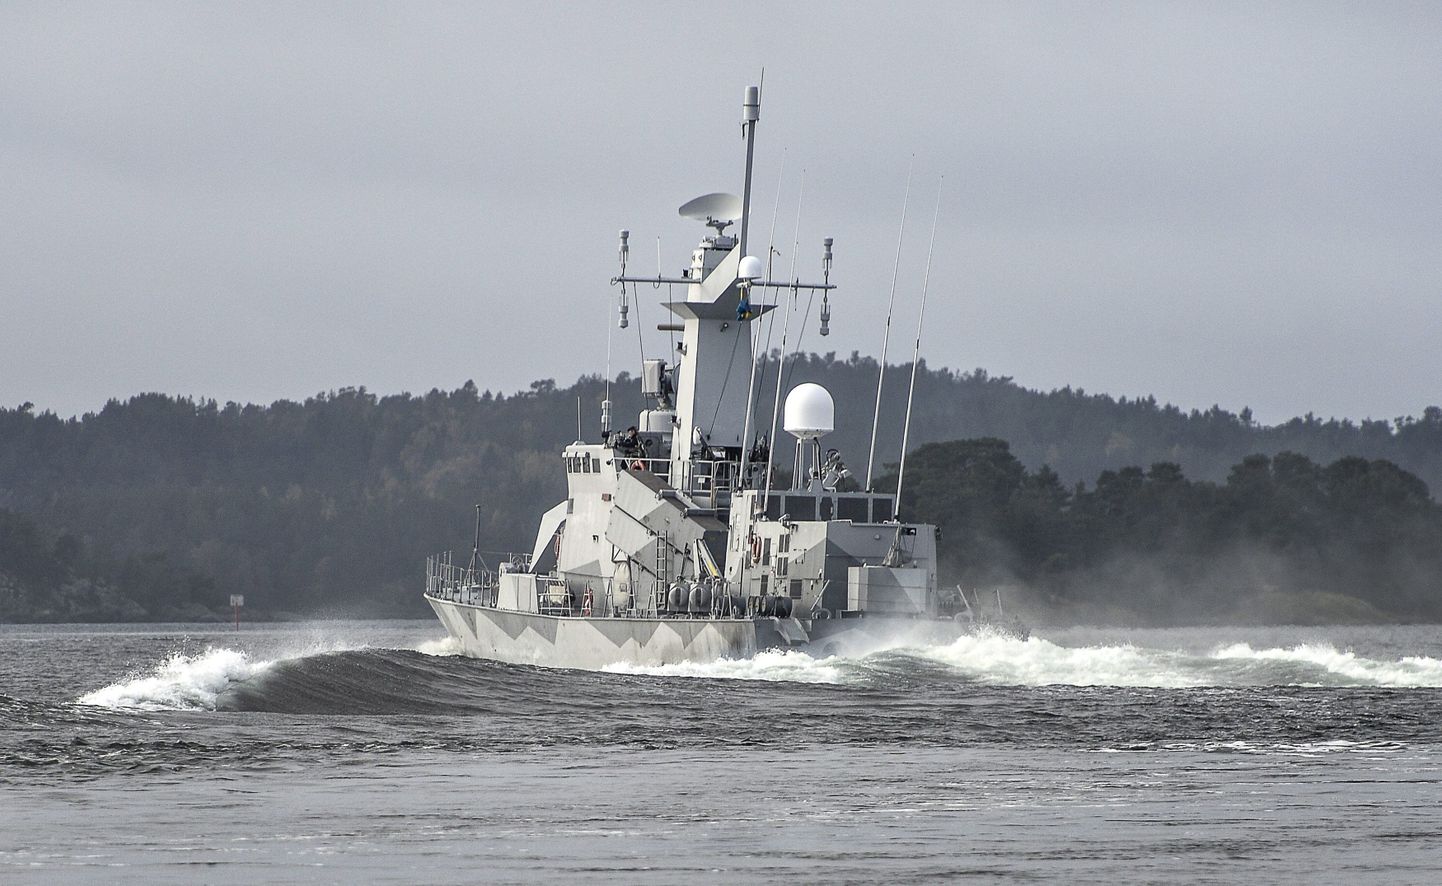 Rootsi mereväe alus otsimas 2014. aastal Stockholmi lähsitel väidetavat Venemaa allveelaeva